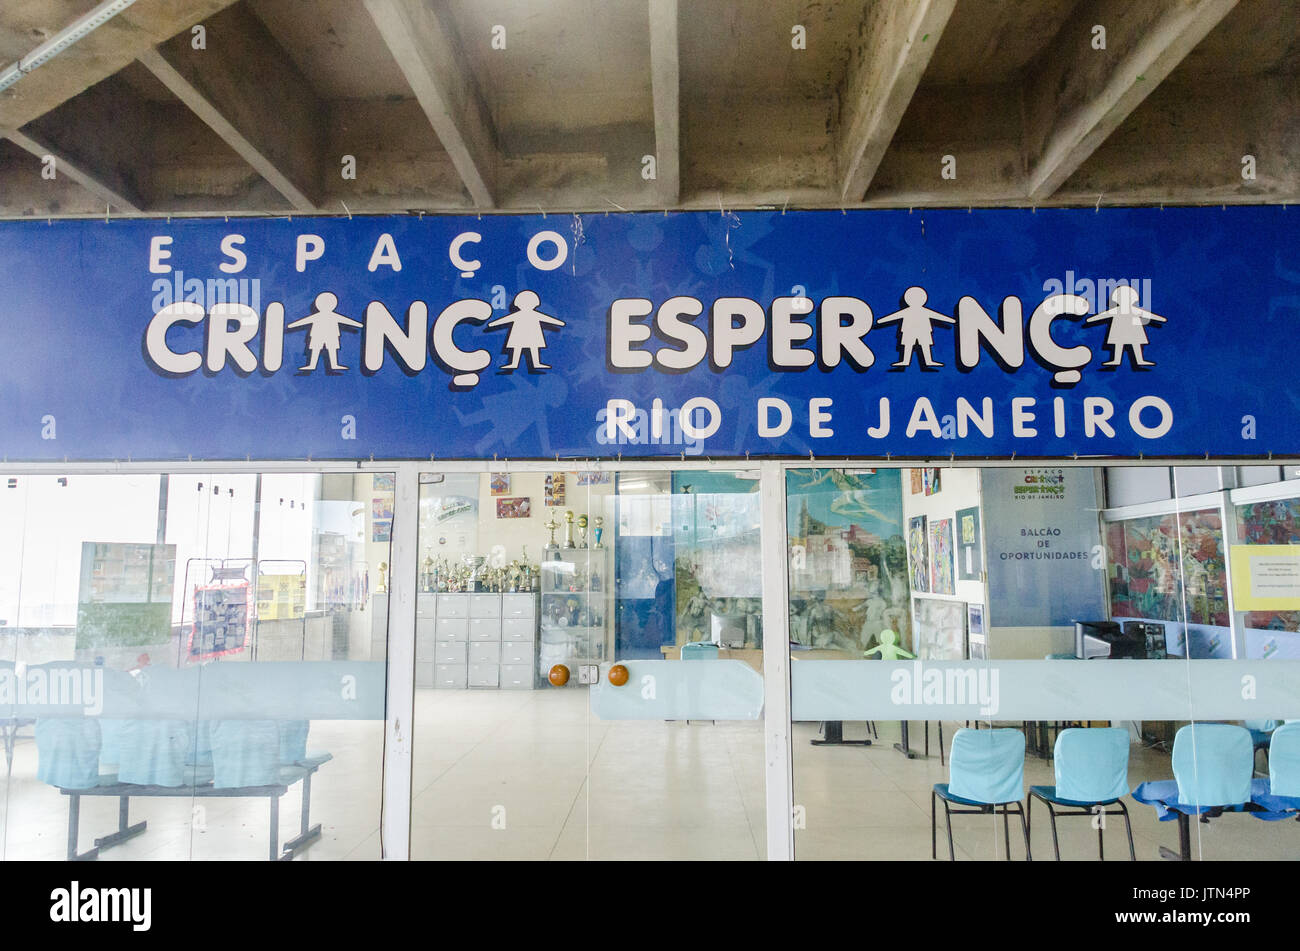 Espaco Crianca Esperança est une ONG à Rio de Janeiro qui permet d'éduquer les enfants des favelas, qui signifie littéralement "un espoir pour les enfants" Banque D'Images